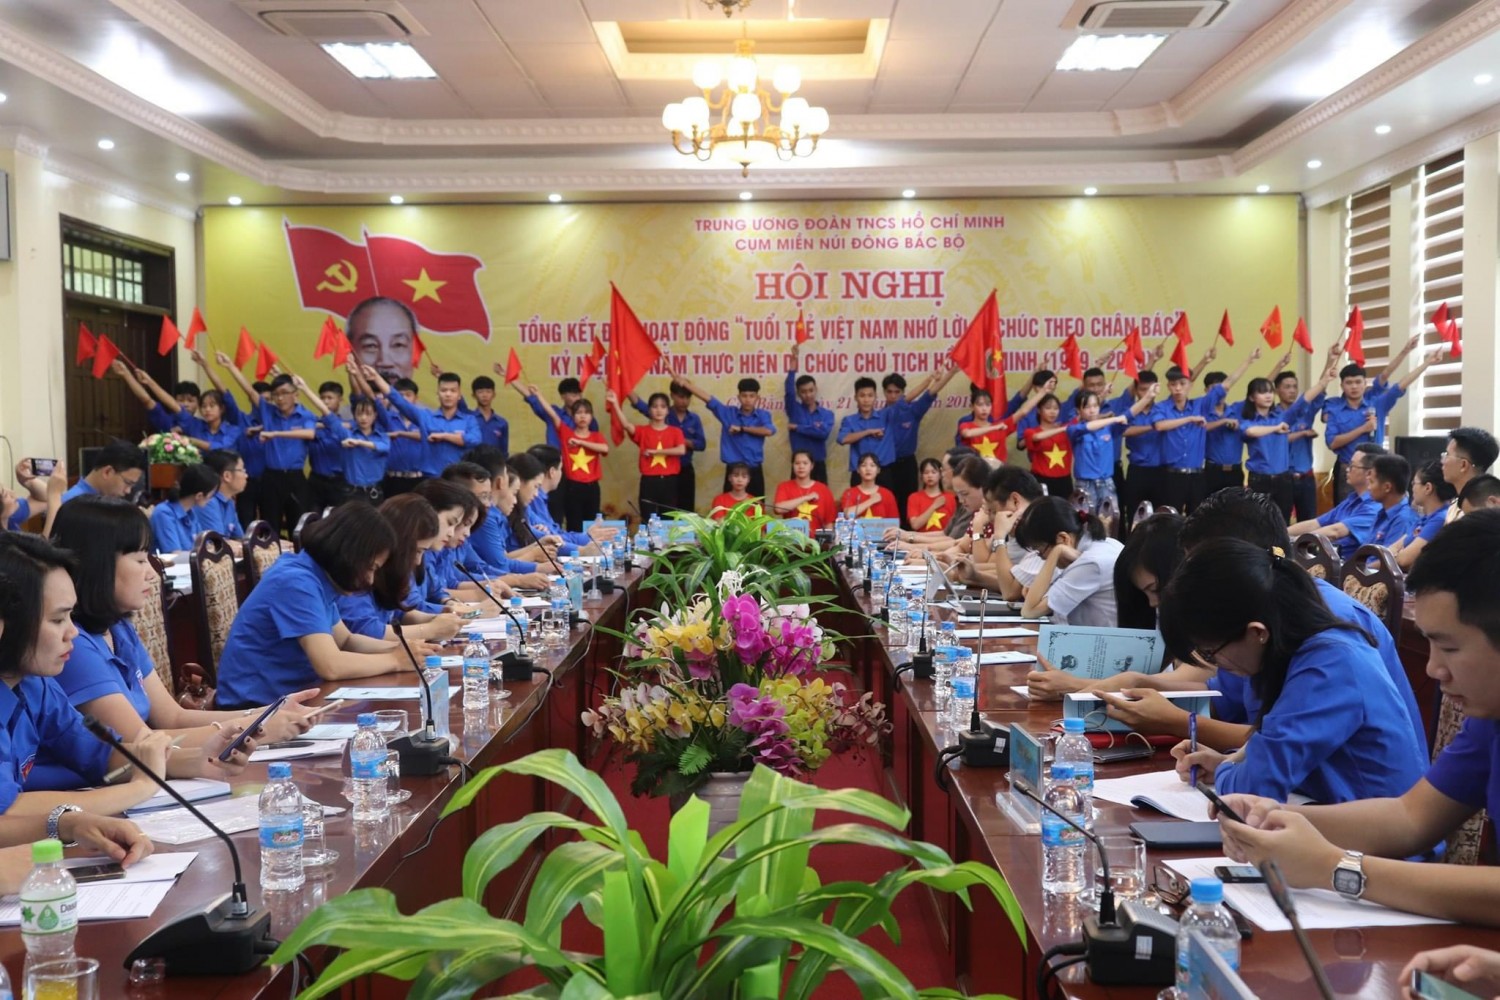 Hội nghị Tổng kết đợt hoạt động Tuổi trẻ Việt Nam nhớ lời di chúc theo chân Bác 1